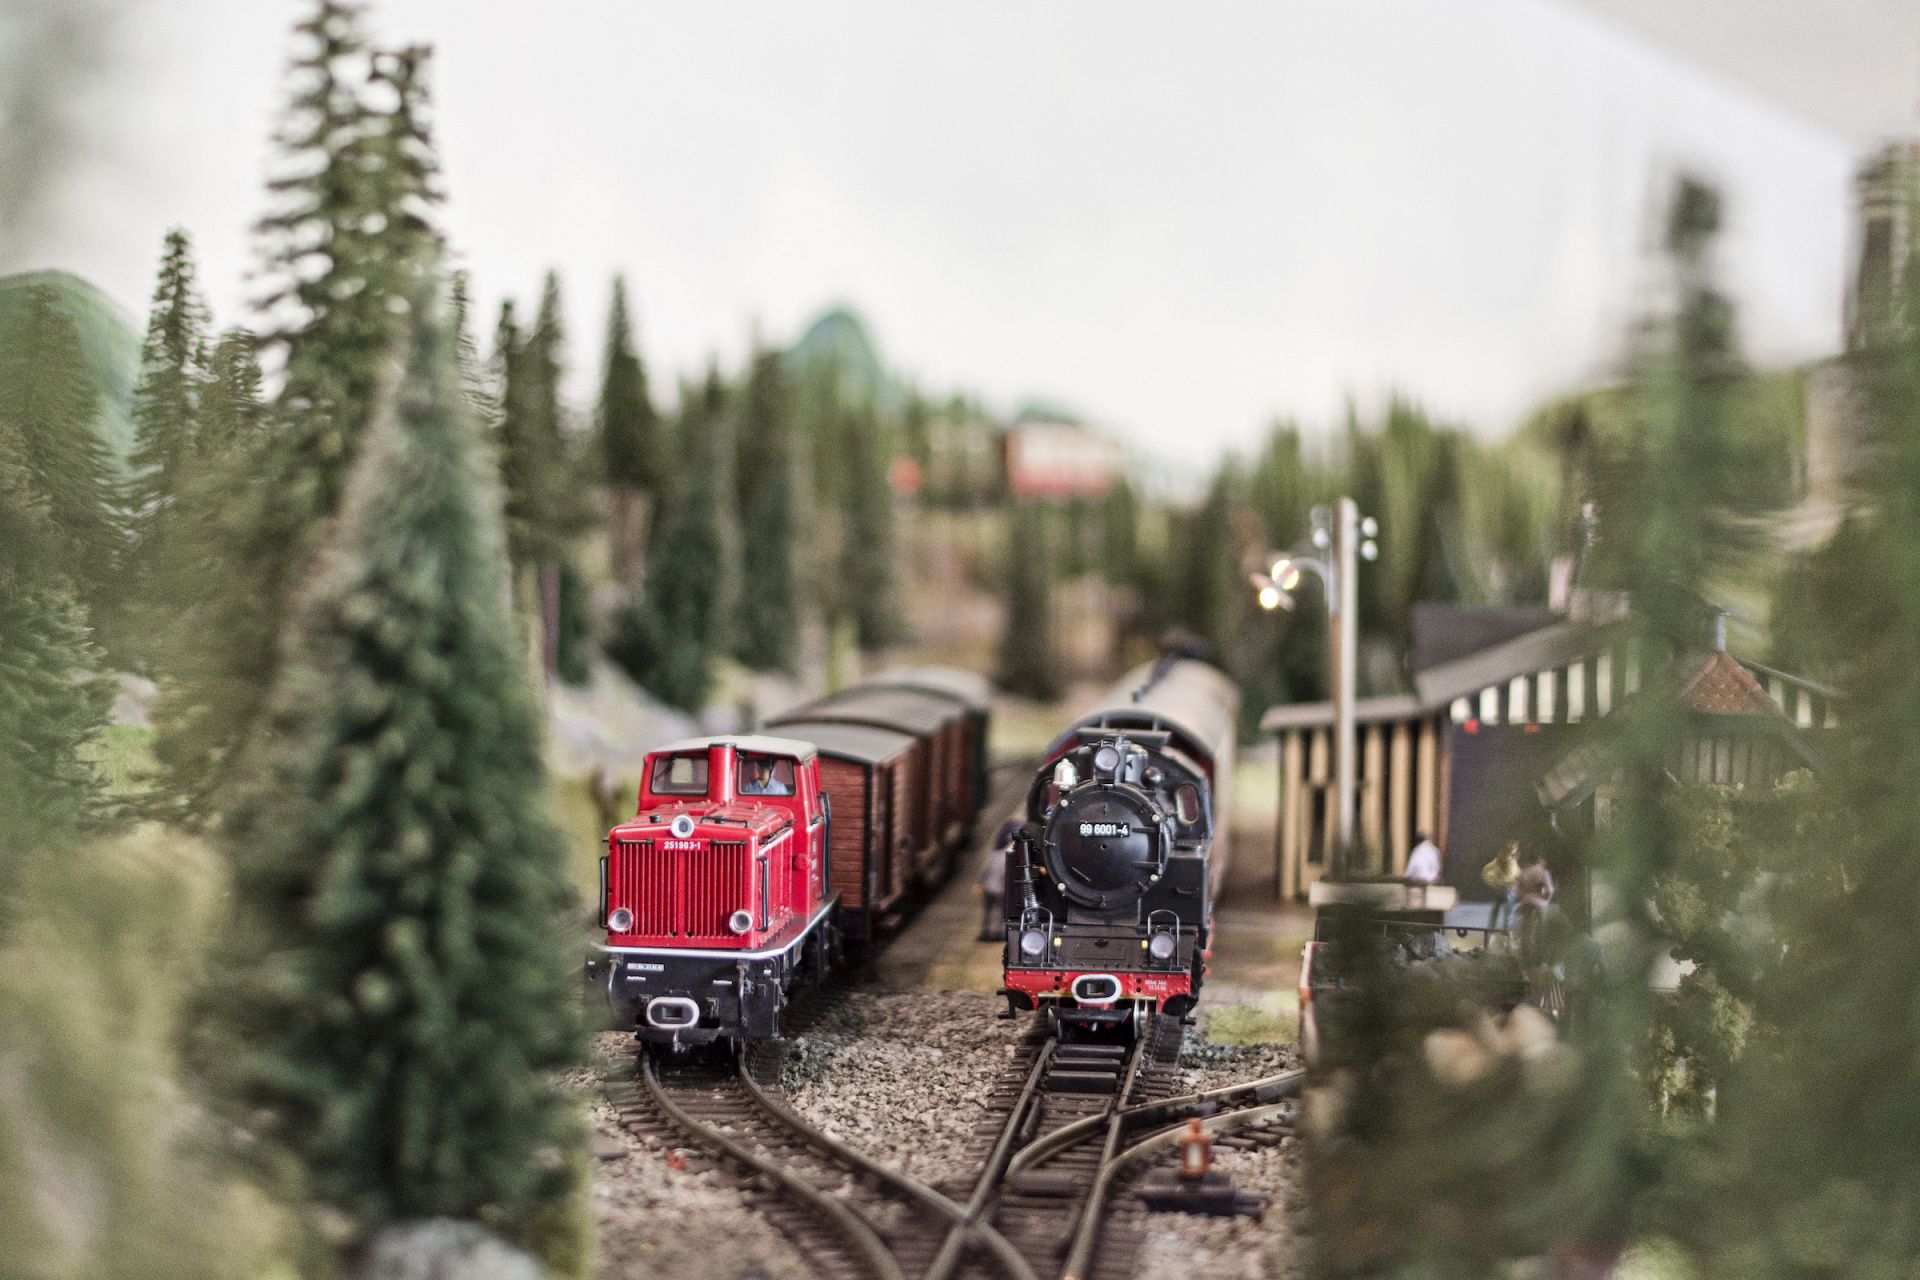 Wiehe model railway 